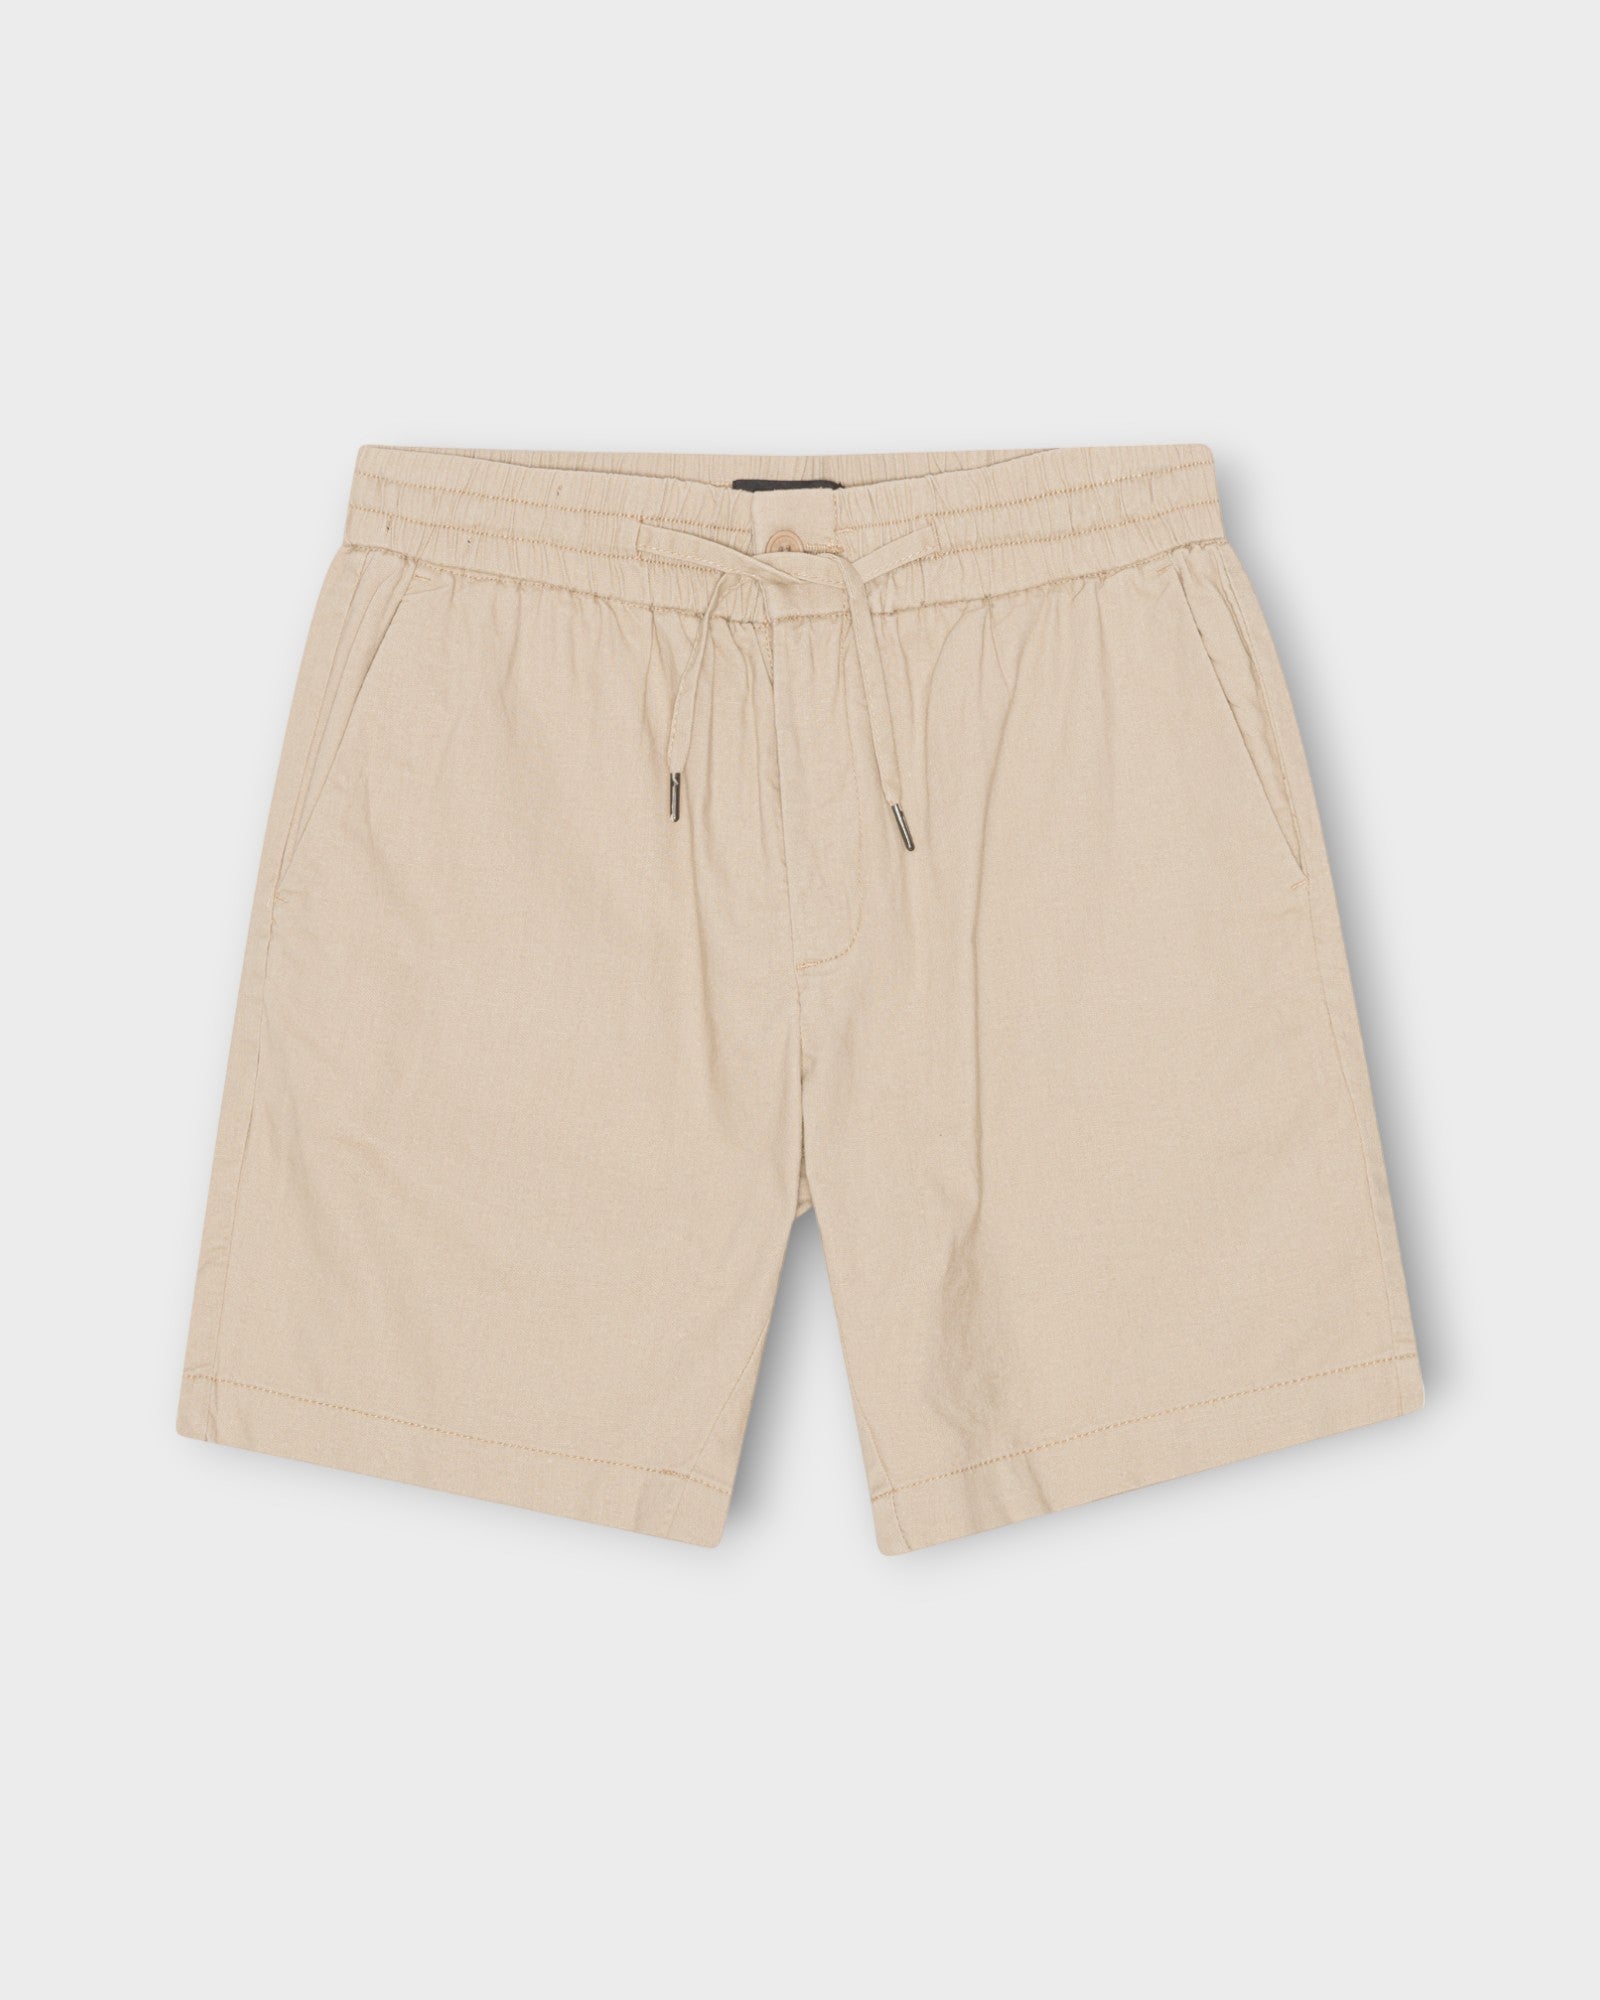 CC1860 Barcelona Cotton Linen Shorts Khaki. Sandfarvet hørshorts til mænd fra Clean Cut Copenhagen. Her set forfra.